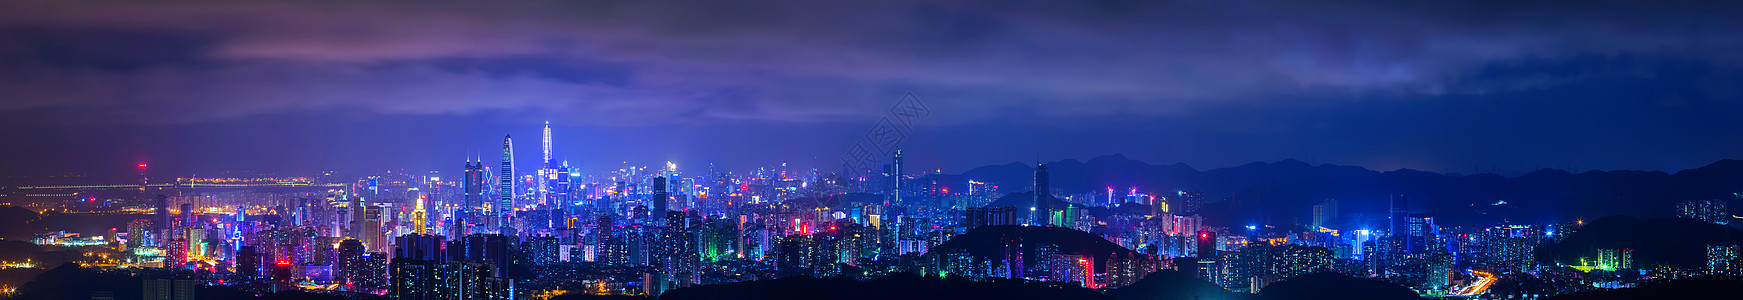 冷调深圳城市夜景背景